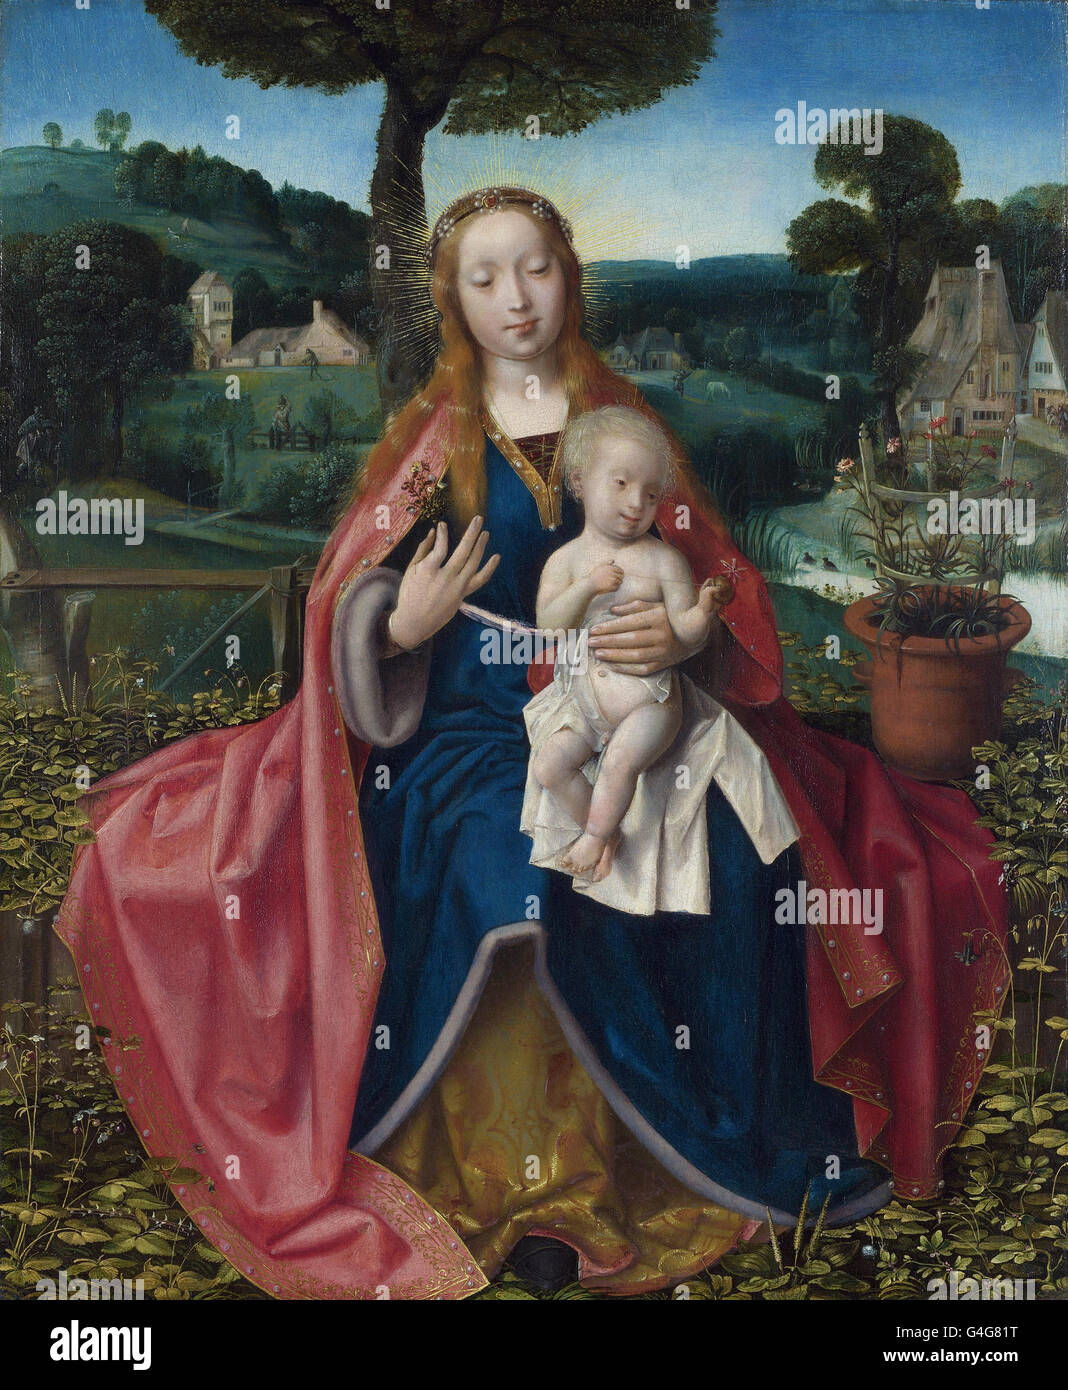 Atribuido a Jan Provoost - La Virgen y el niño en un paisaje Foto de stock